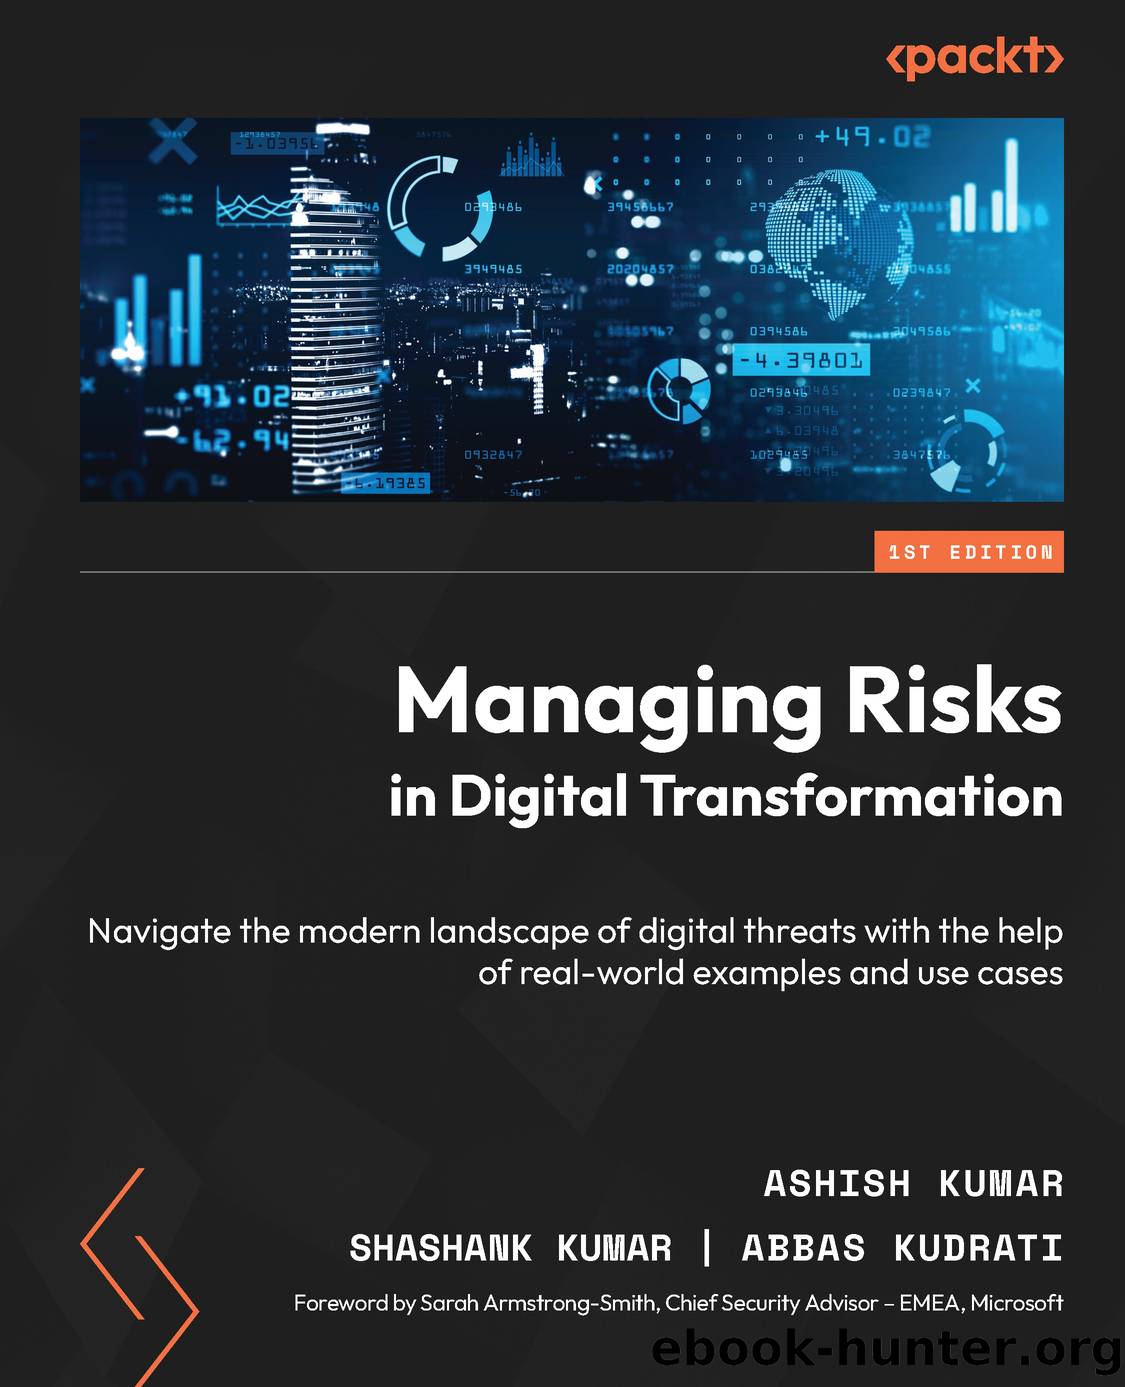 Managing Risks in Digital Transformation by Ashish Kumar & Shashank Kumar & Abbas Kudrati